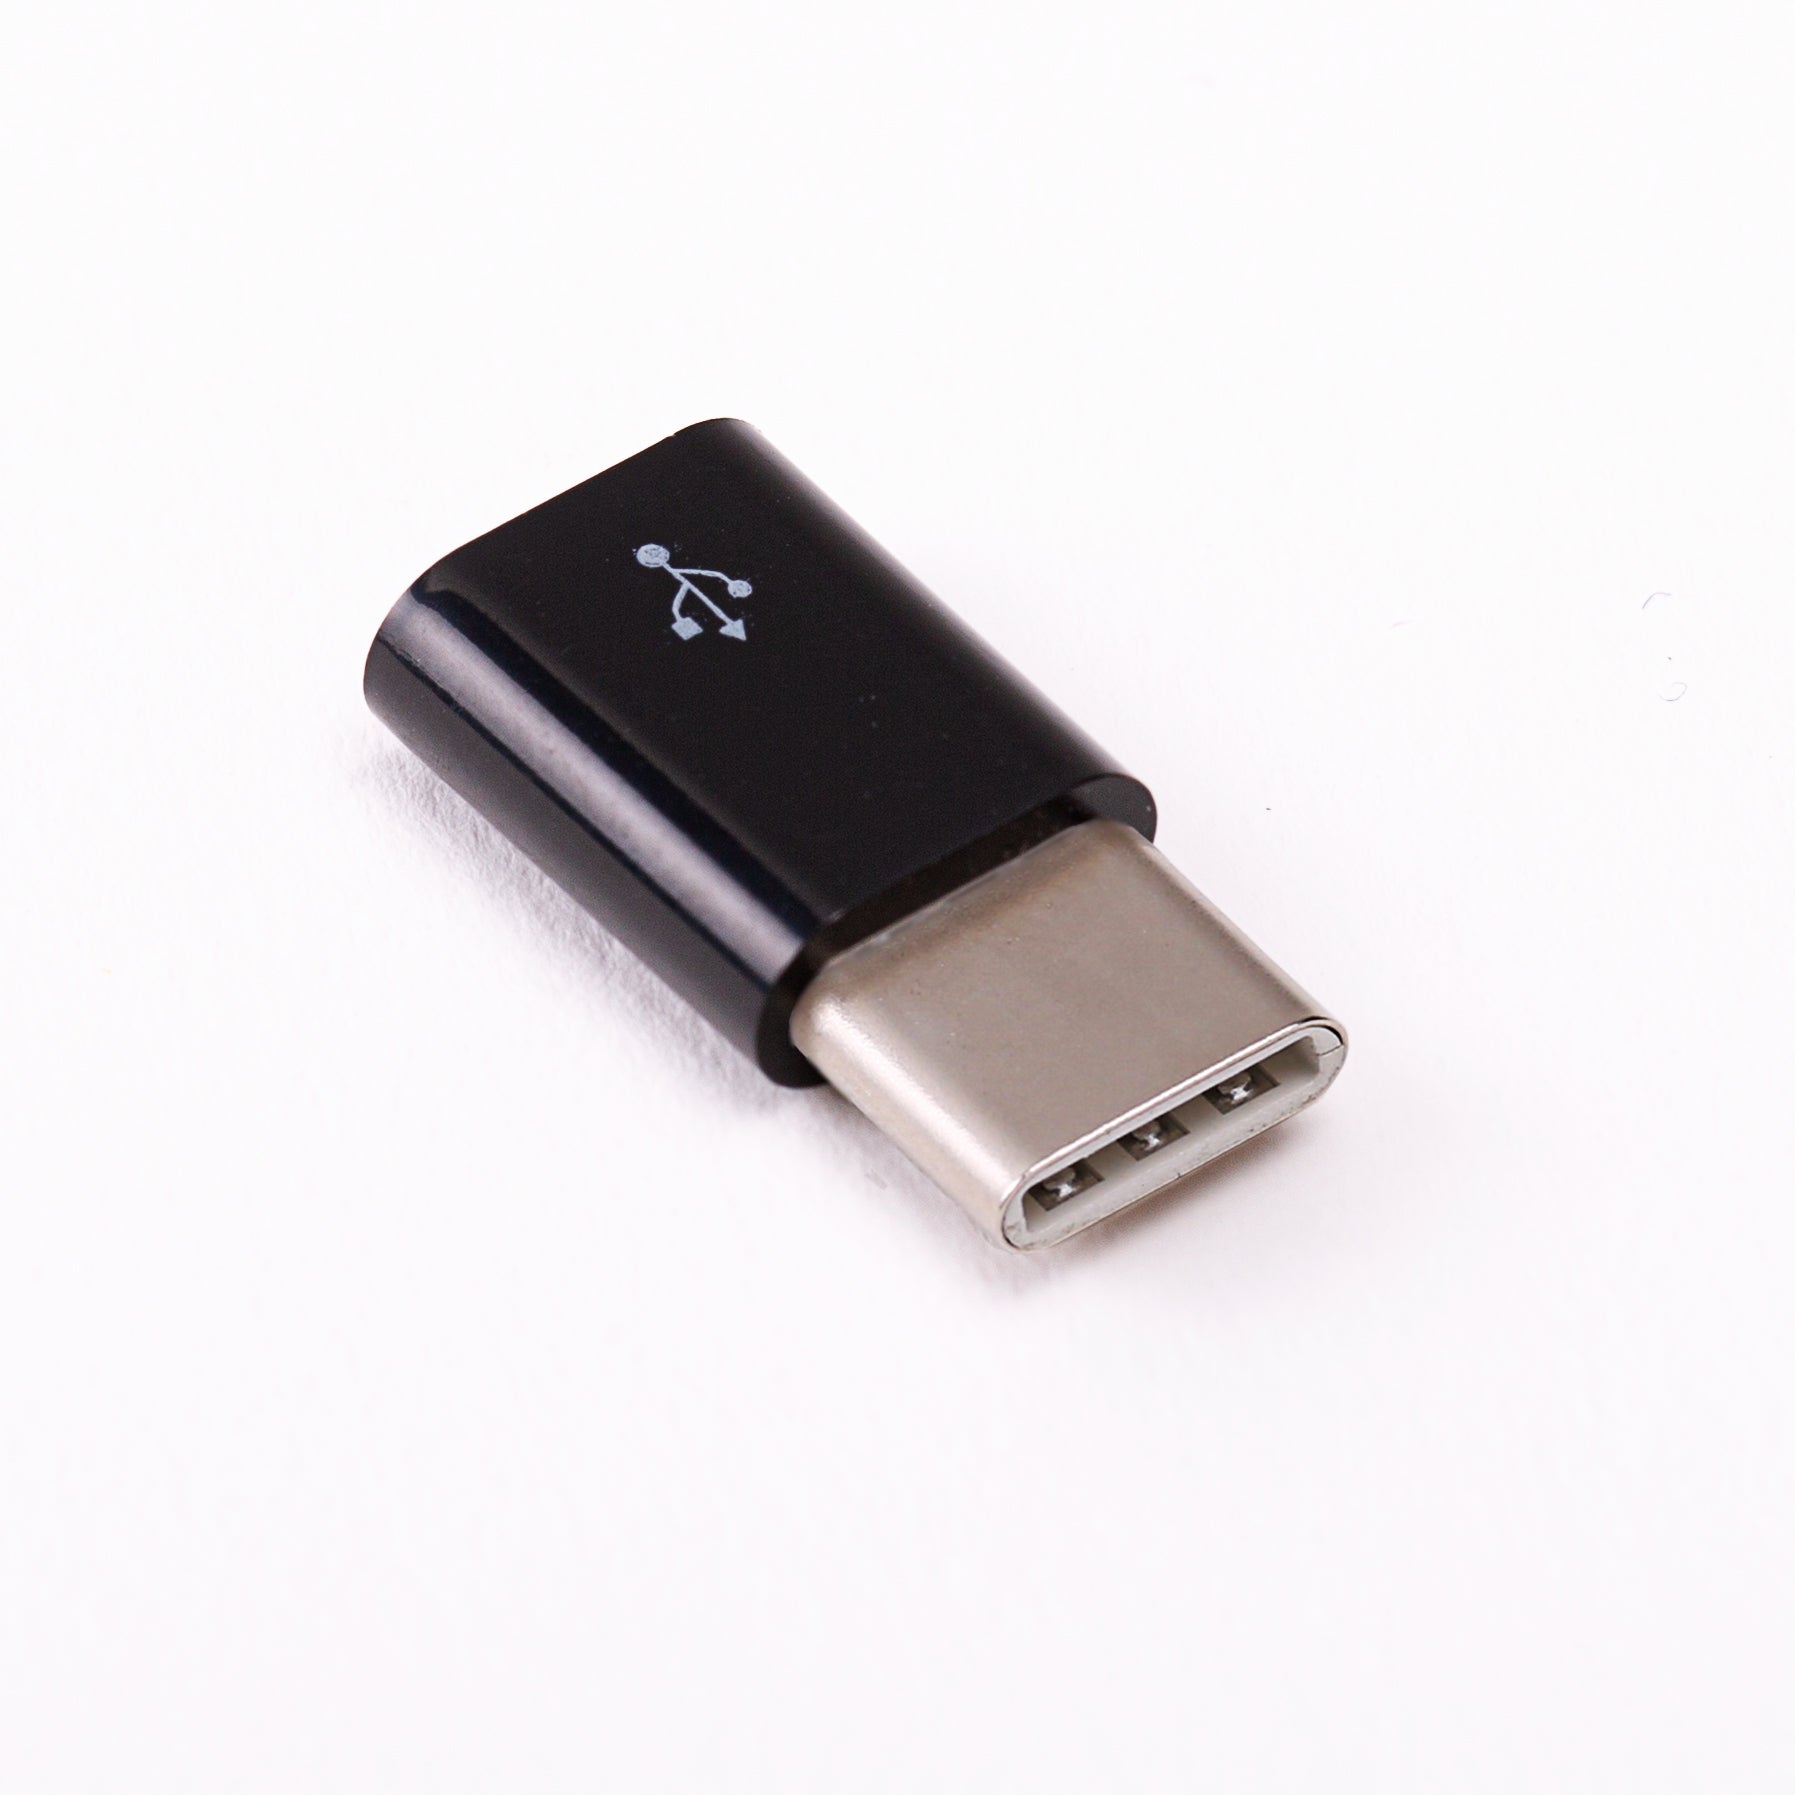 Adaptateur USB B - USB C